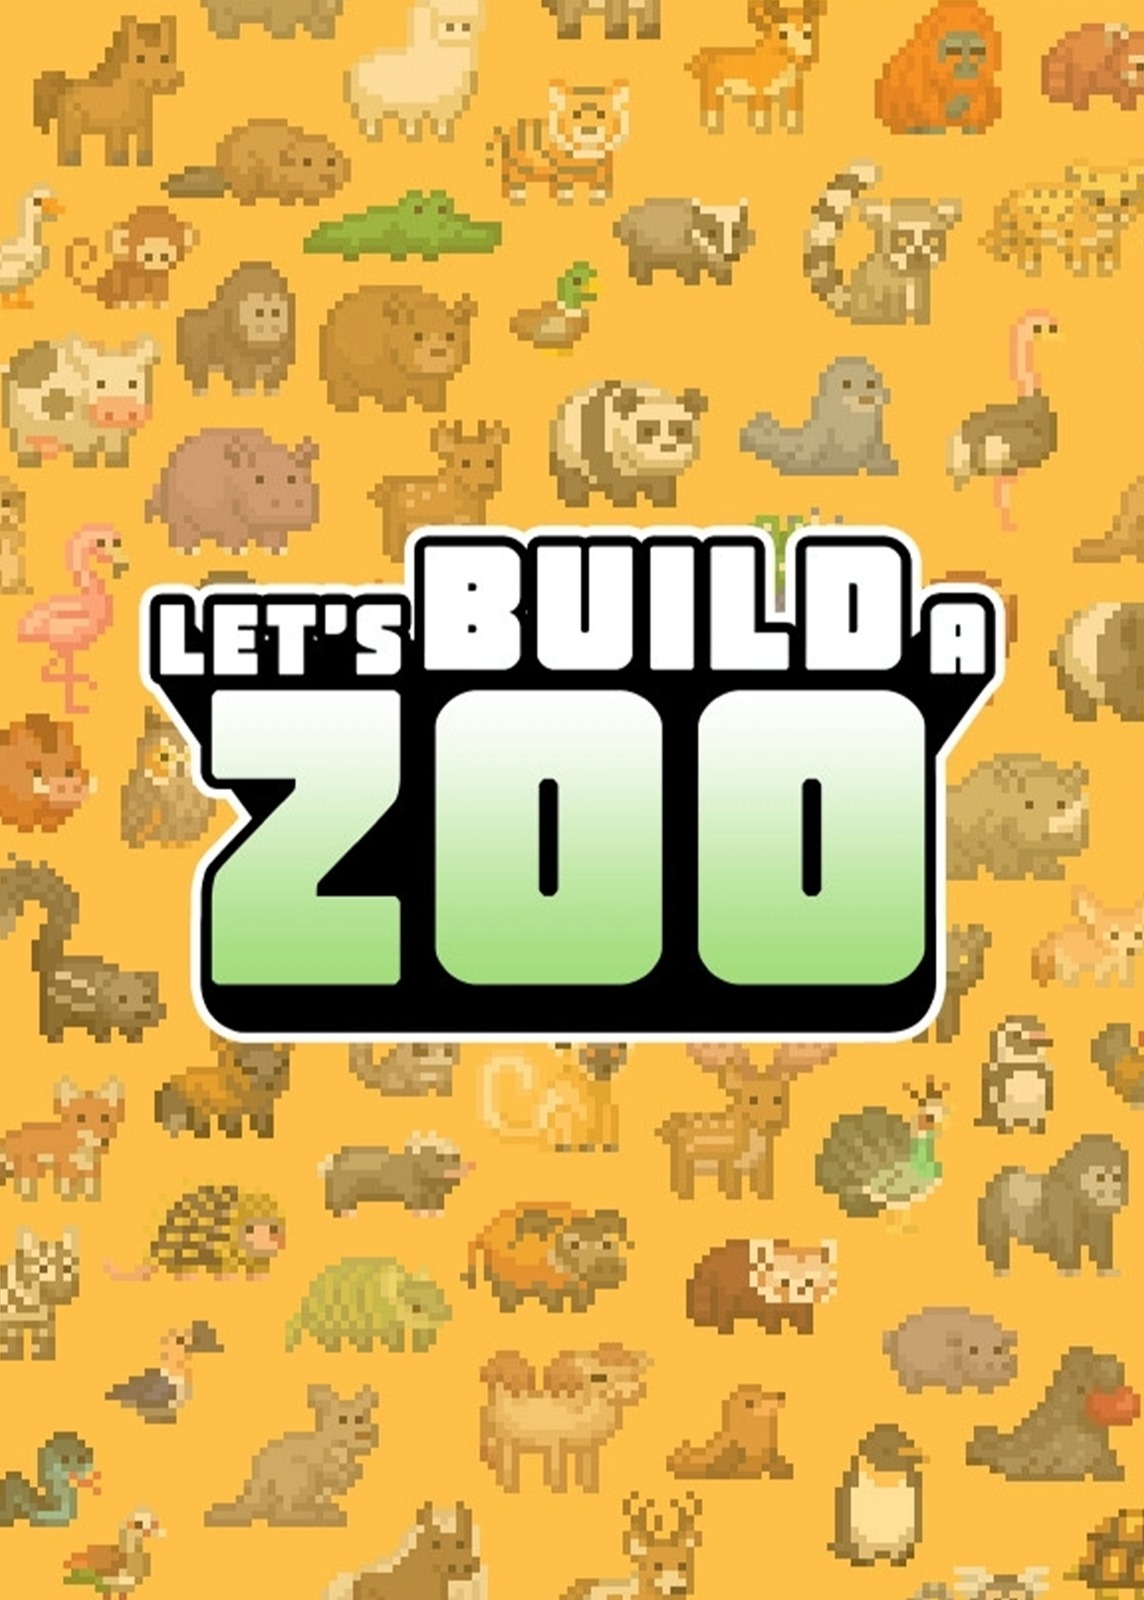 来建一家动物园/让我们建一个动物园吧/Let’s Build a Zoo